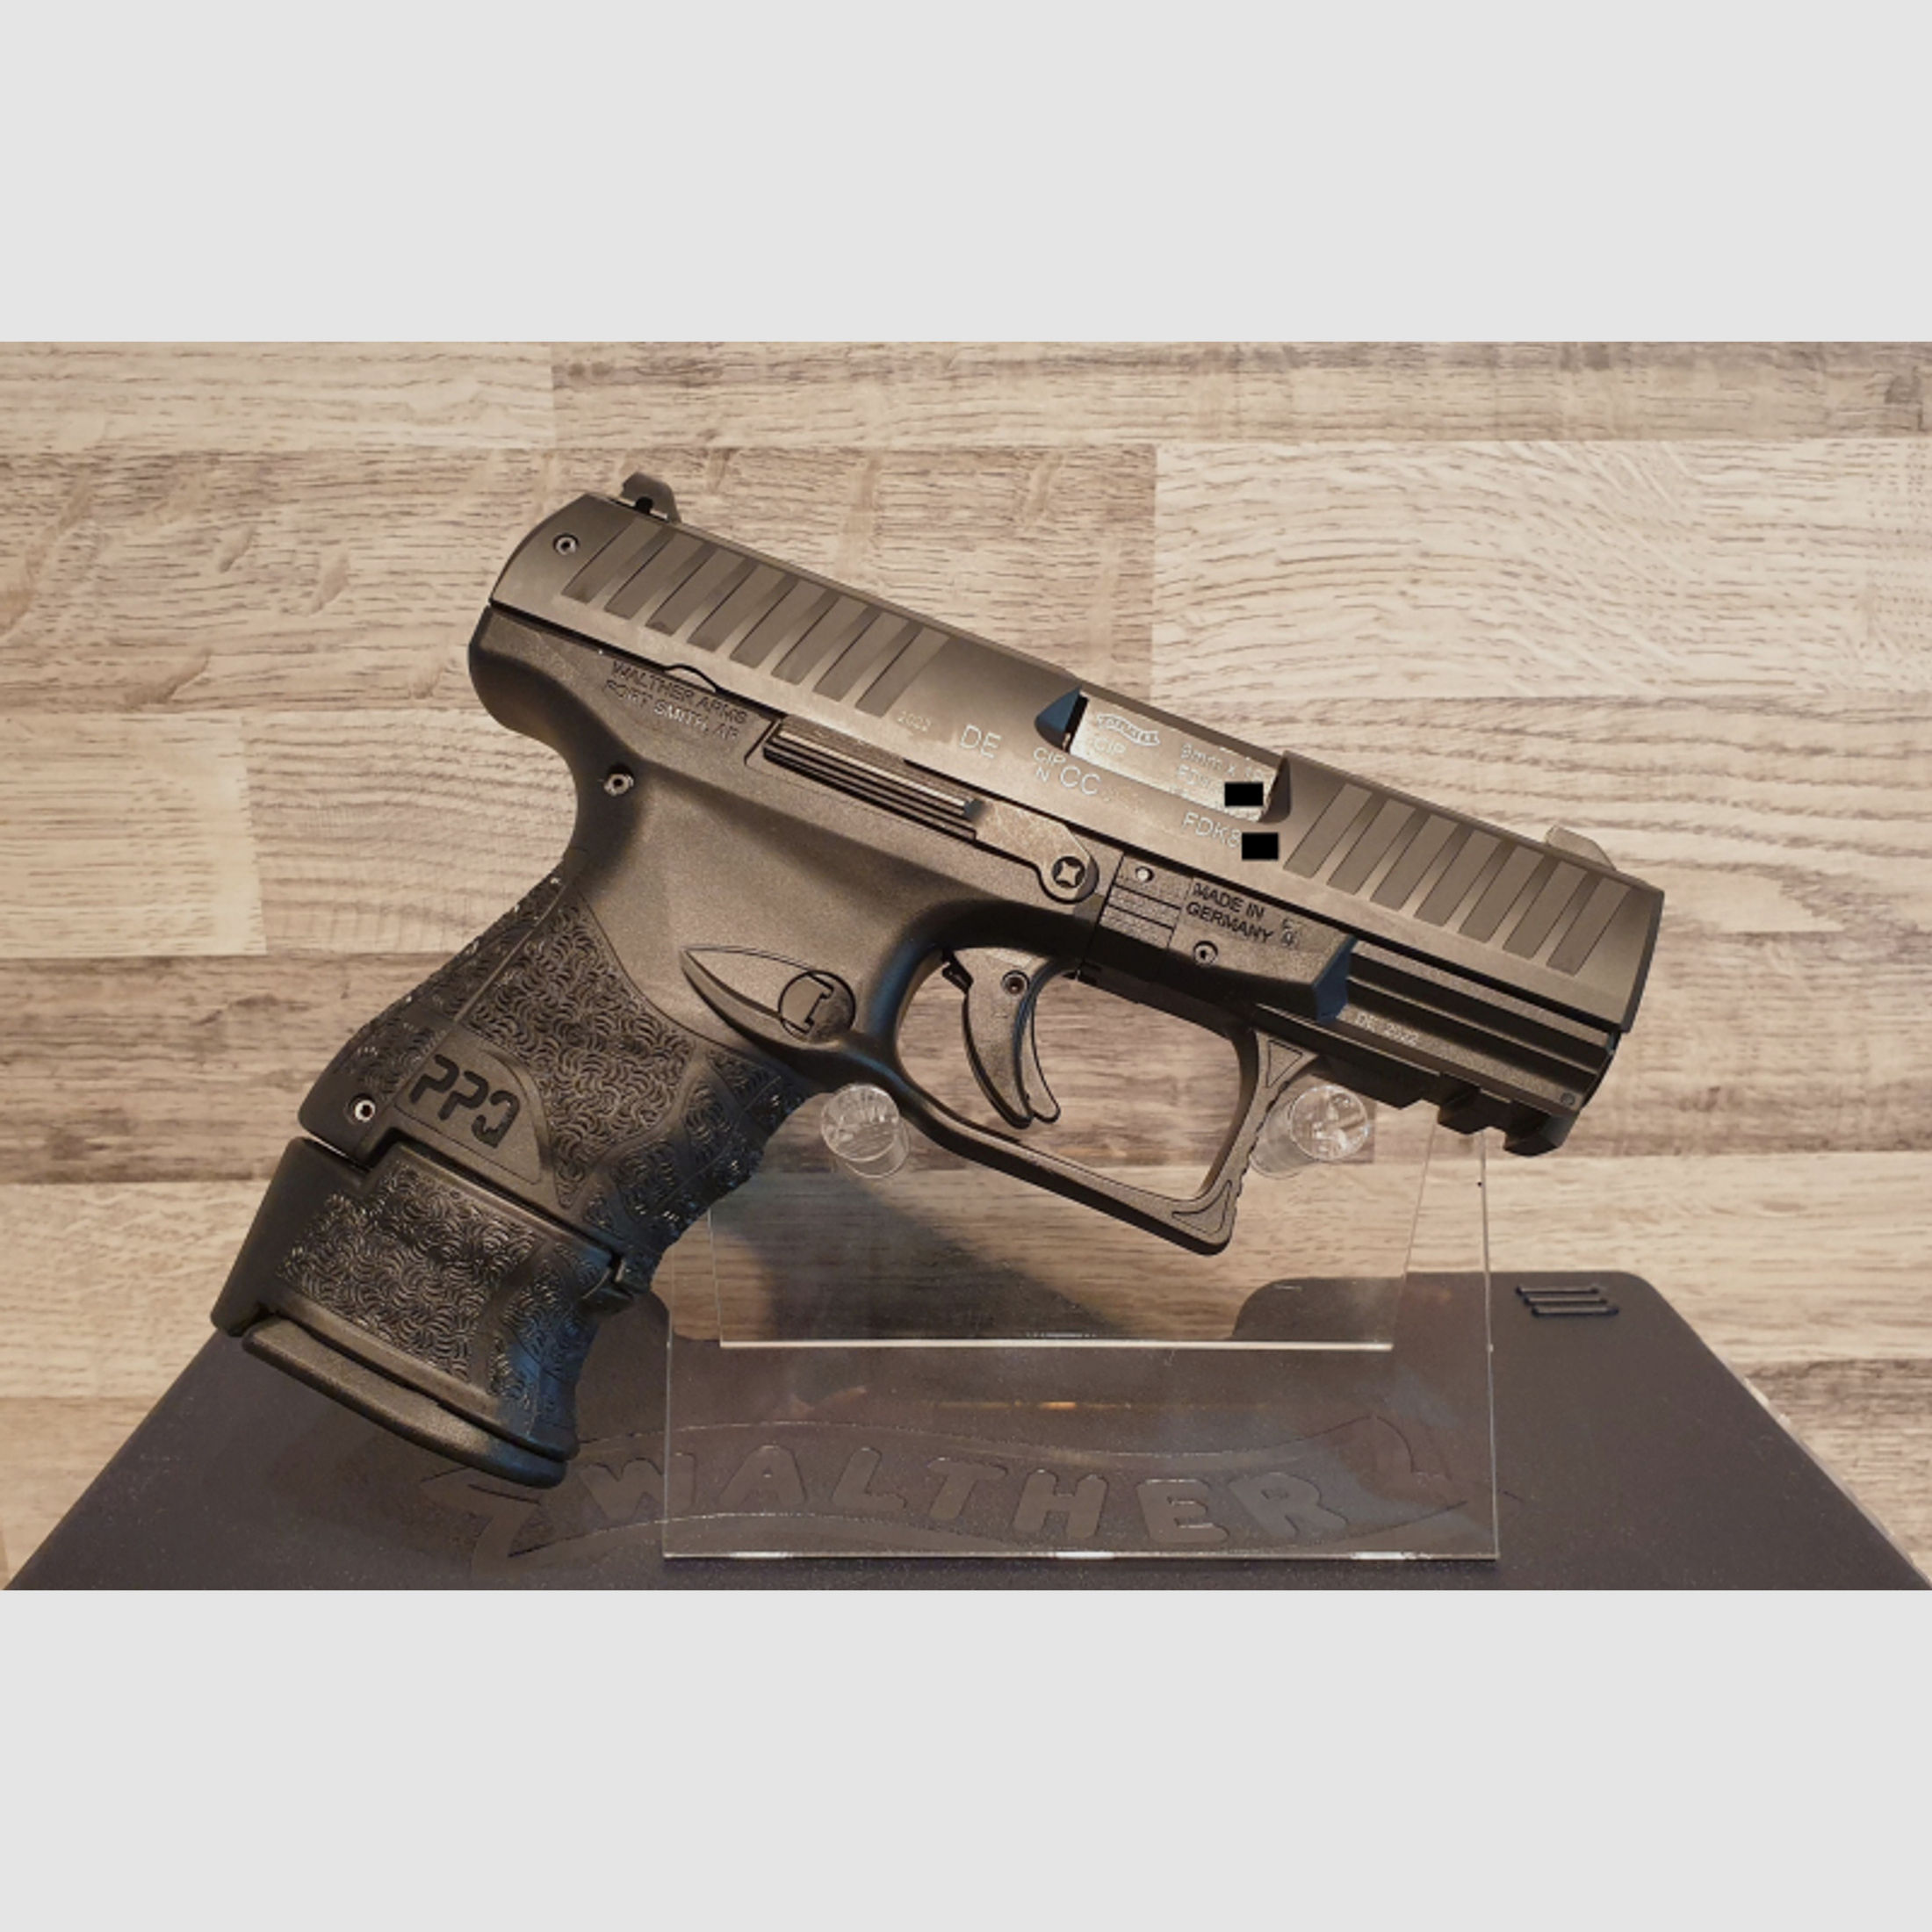 Neuware vom Fachhandel - Walther PPQ M2 Sub Compact 9mm Luger / Para mit Koffer und 3 Magazinen